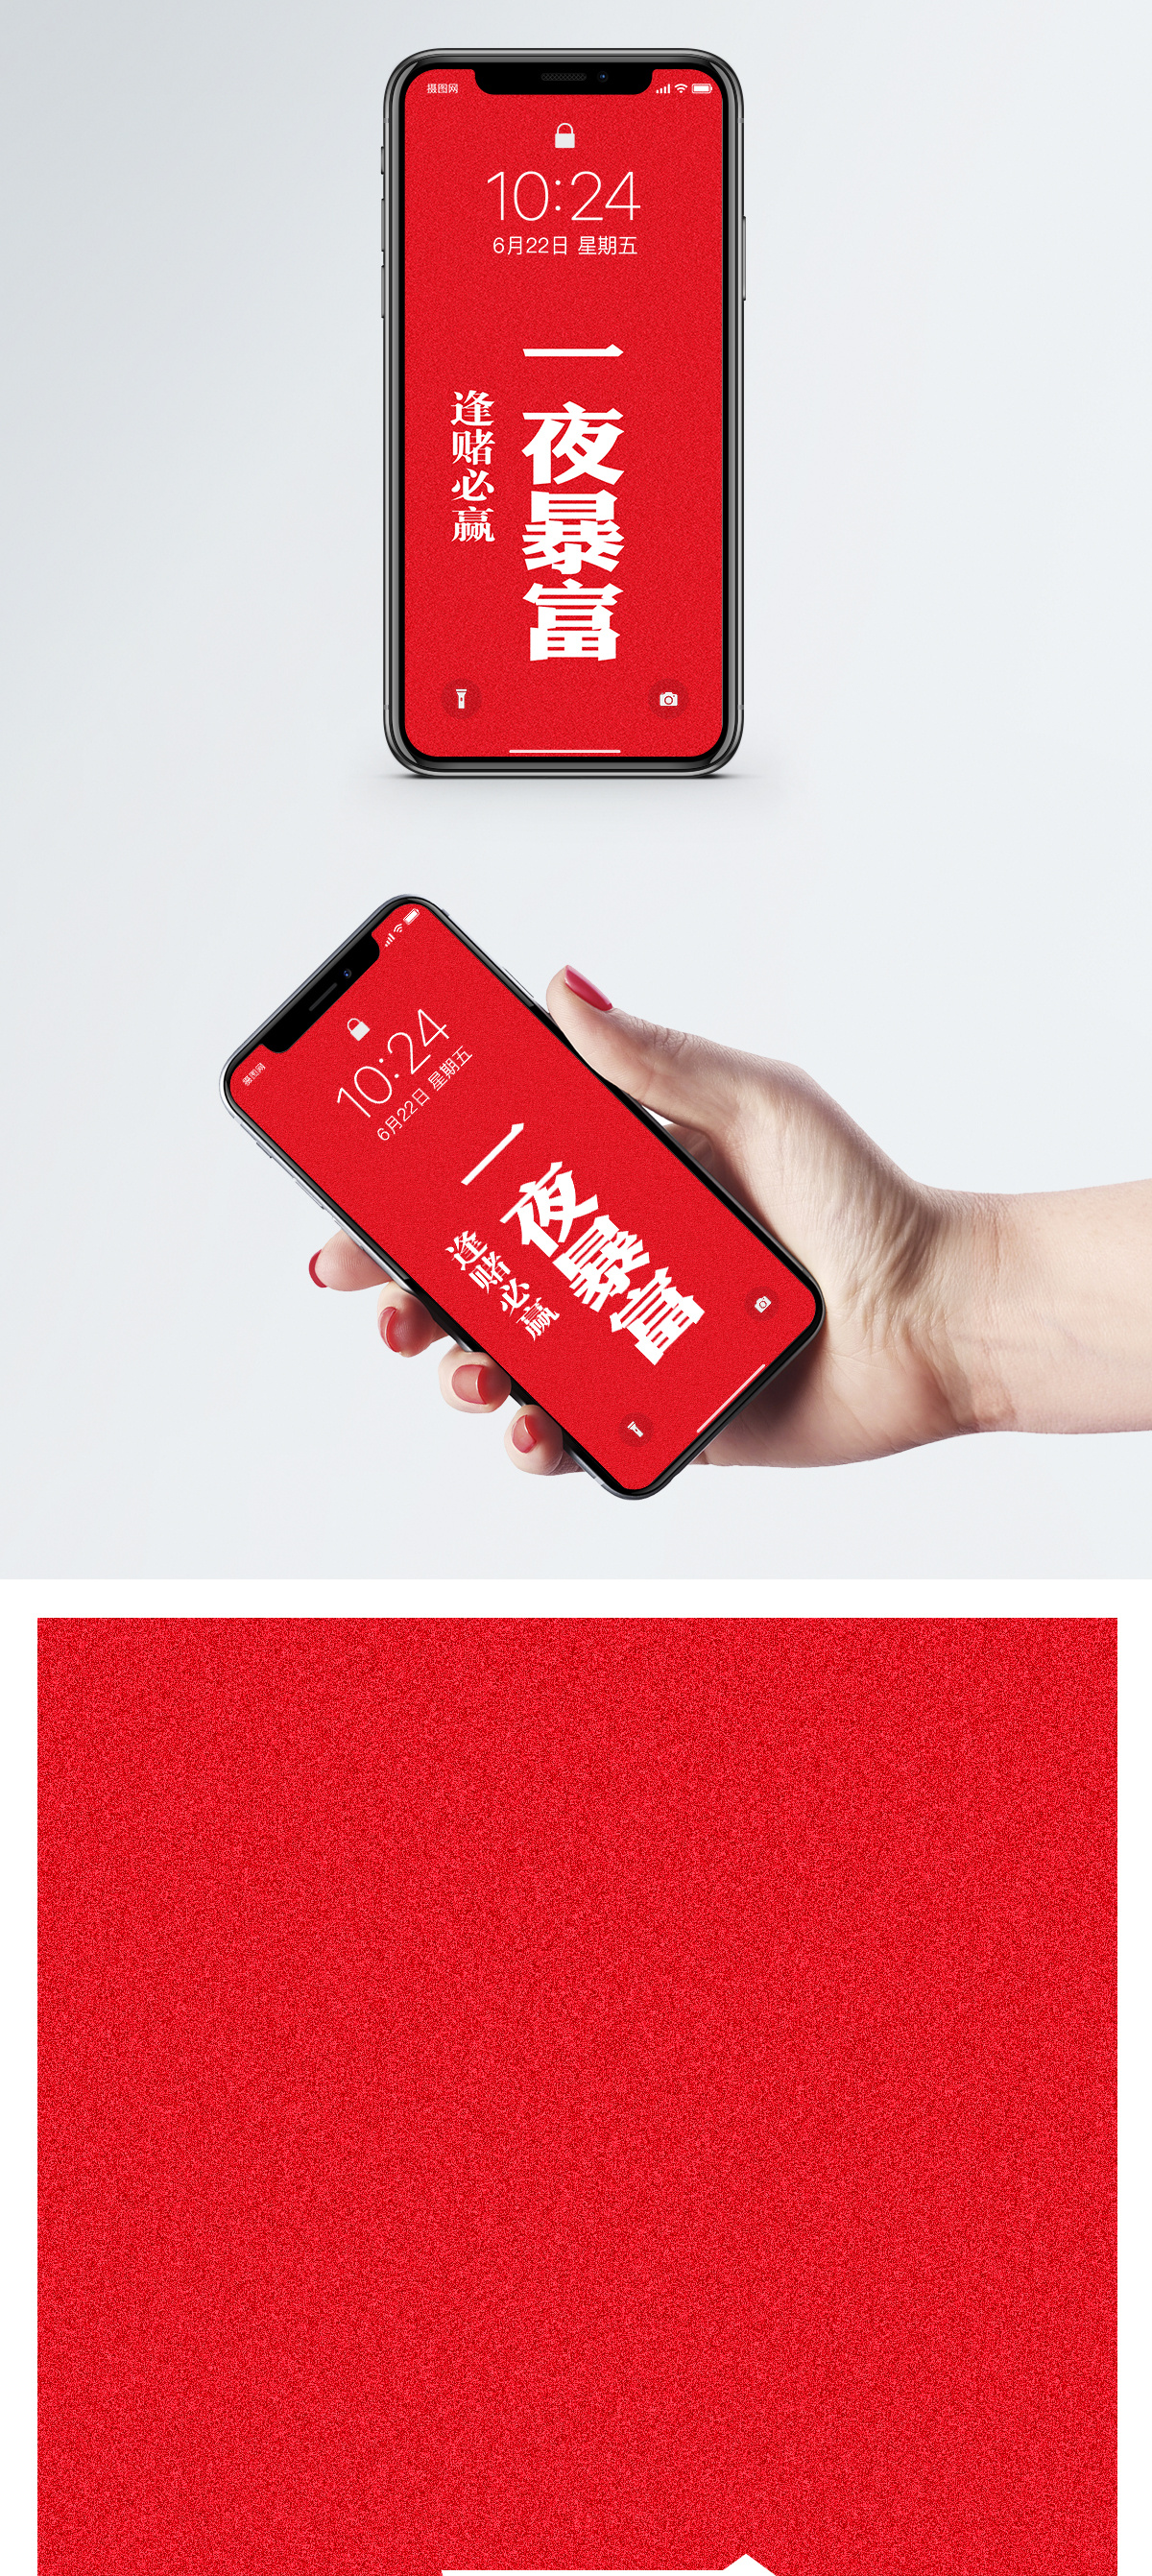 高端时尚红色背景一夜暴富手机壁纸模板